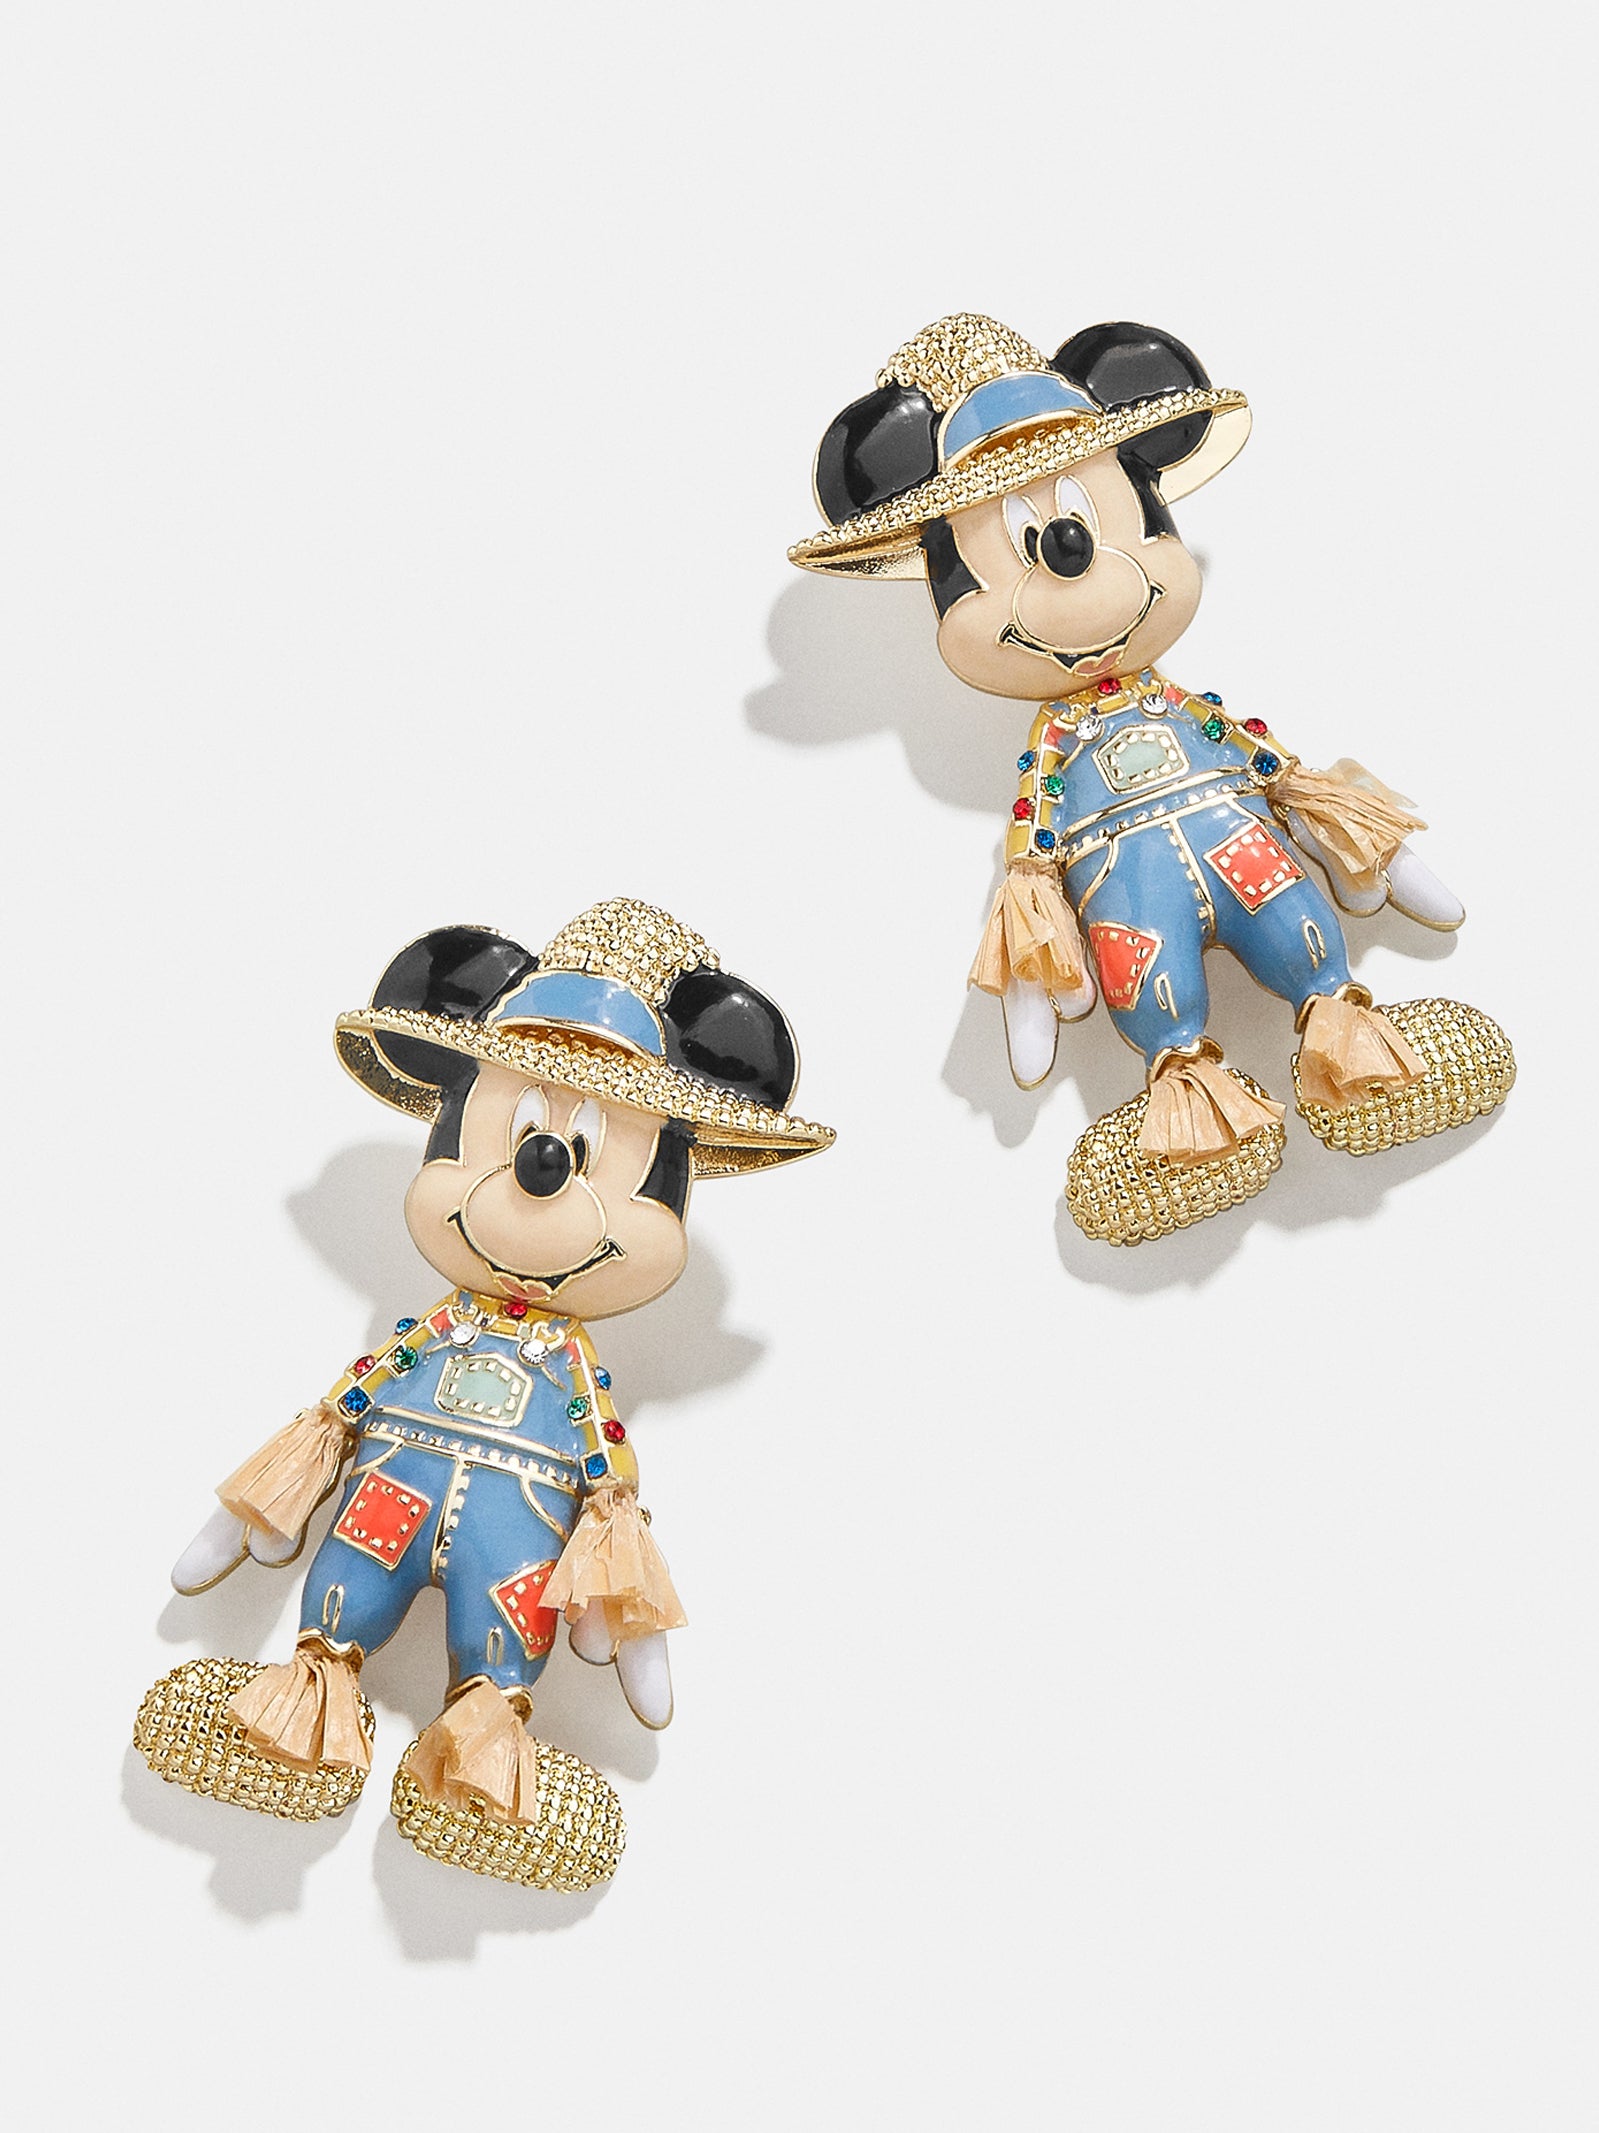 HKDL - Mickey & Friends Earrings (Disney x BAUBLEBAR)【Ready Stock